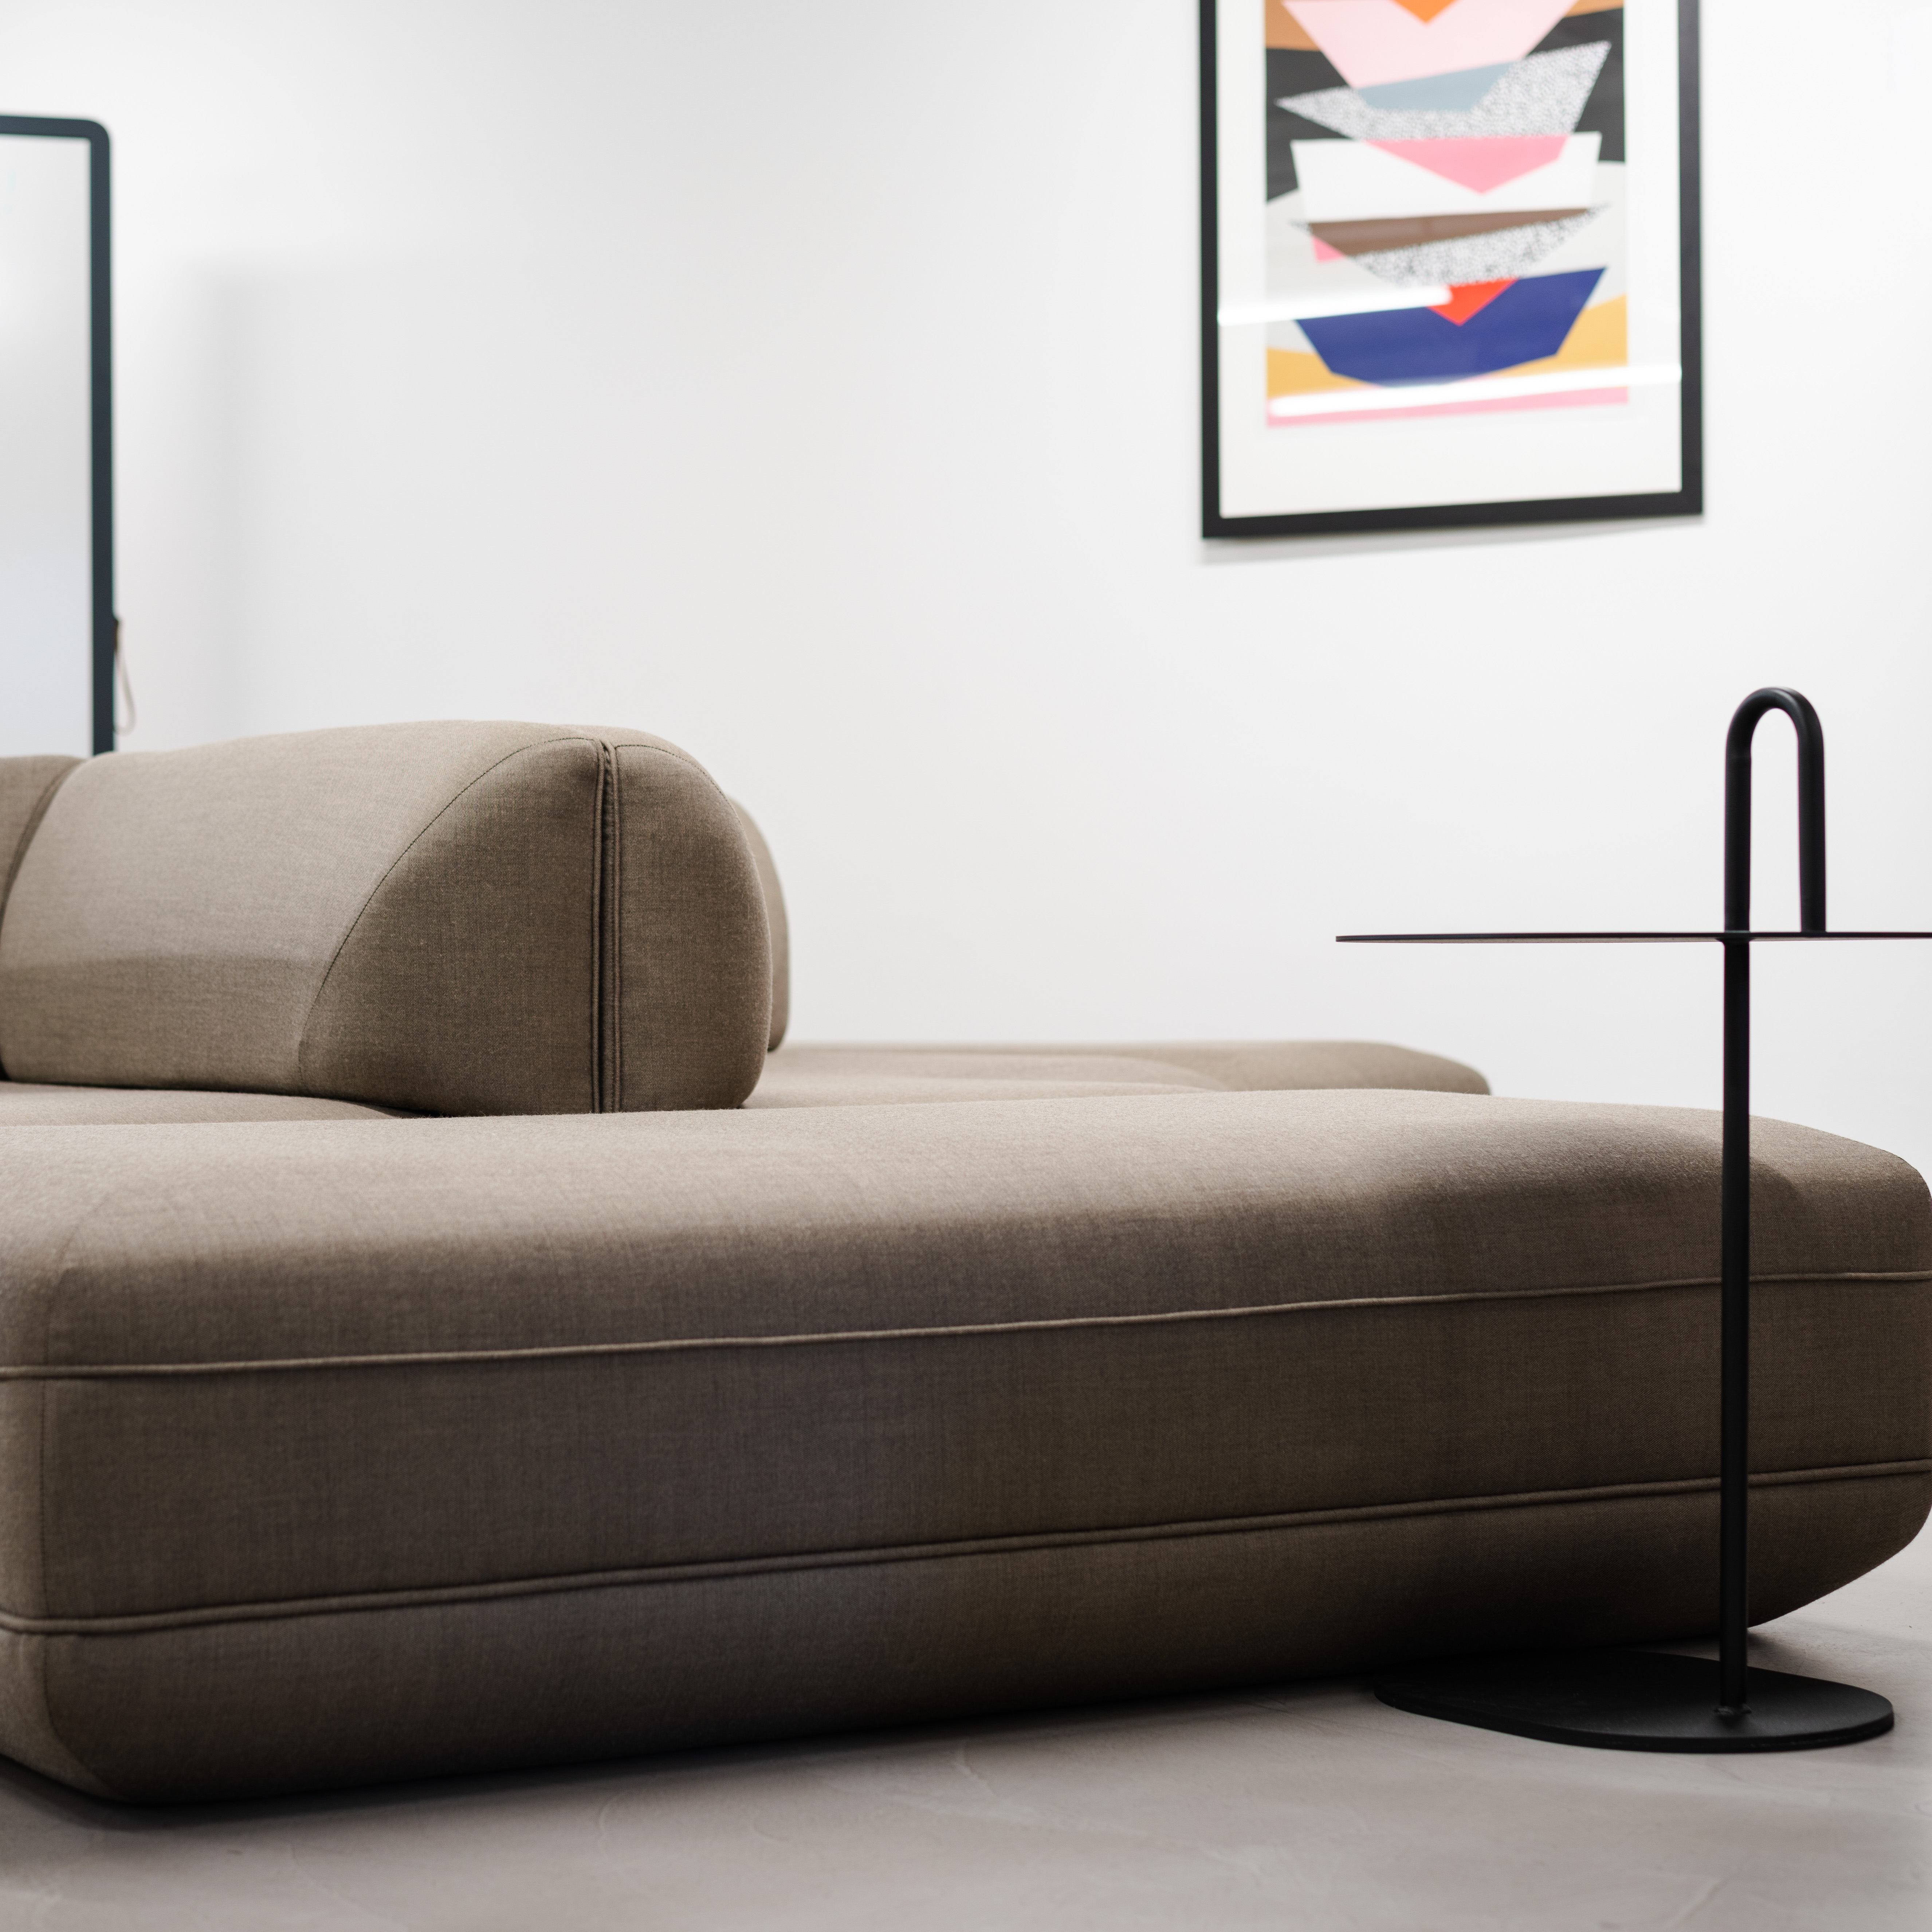 WS - Showroom - Islands sofa - Beige - Details (2)